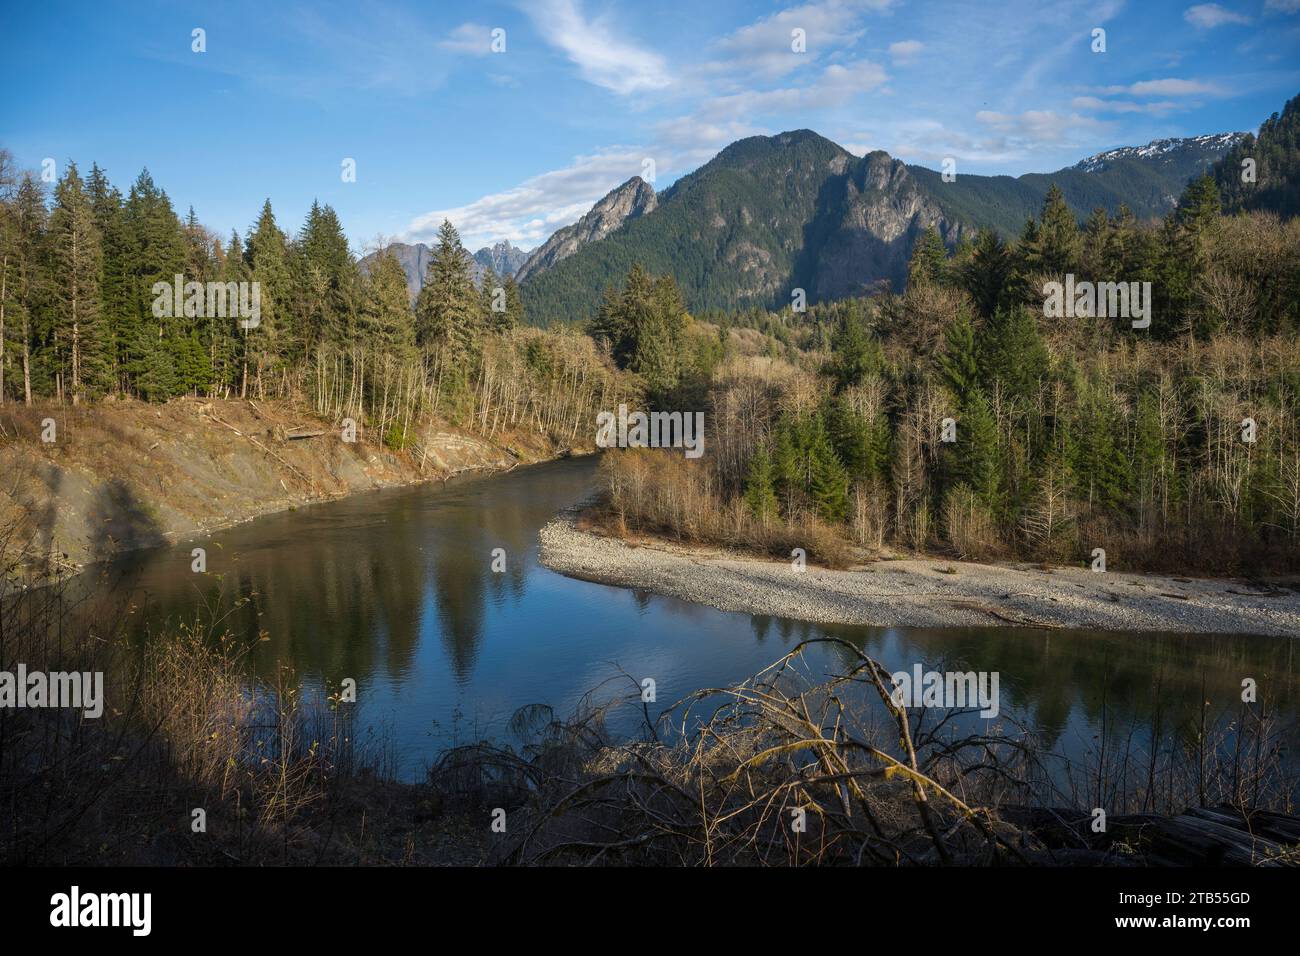 Vue de la vallée de la rivière Middle Fork Snoqualmie depuis le sentier de boucle Oxbow près de North Bend dans l'État de Washington, États-Unis. Banque D'Images